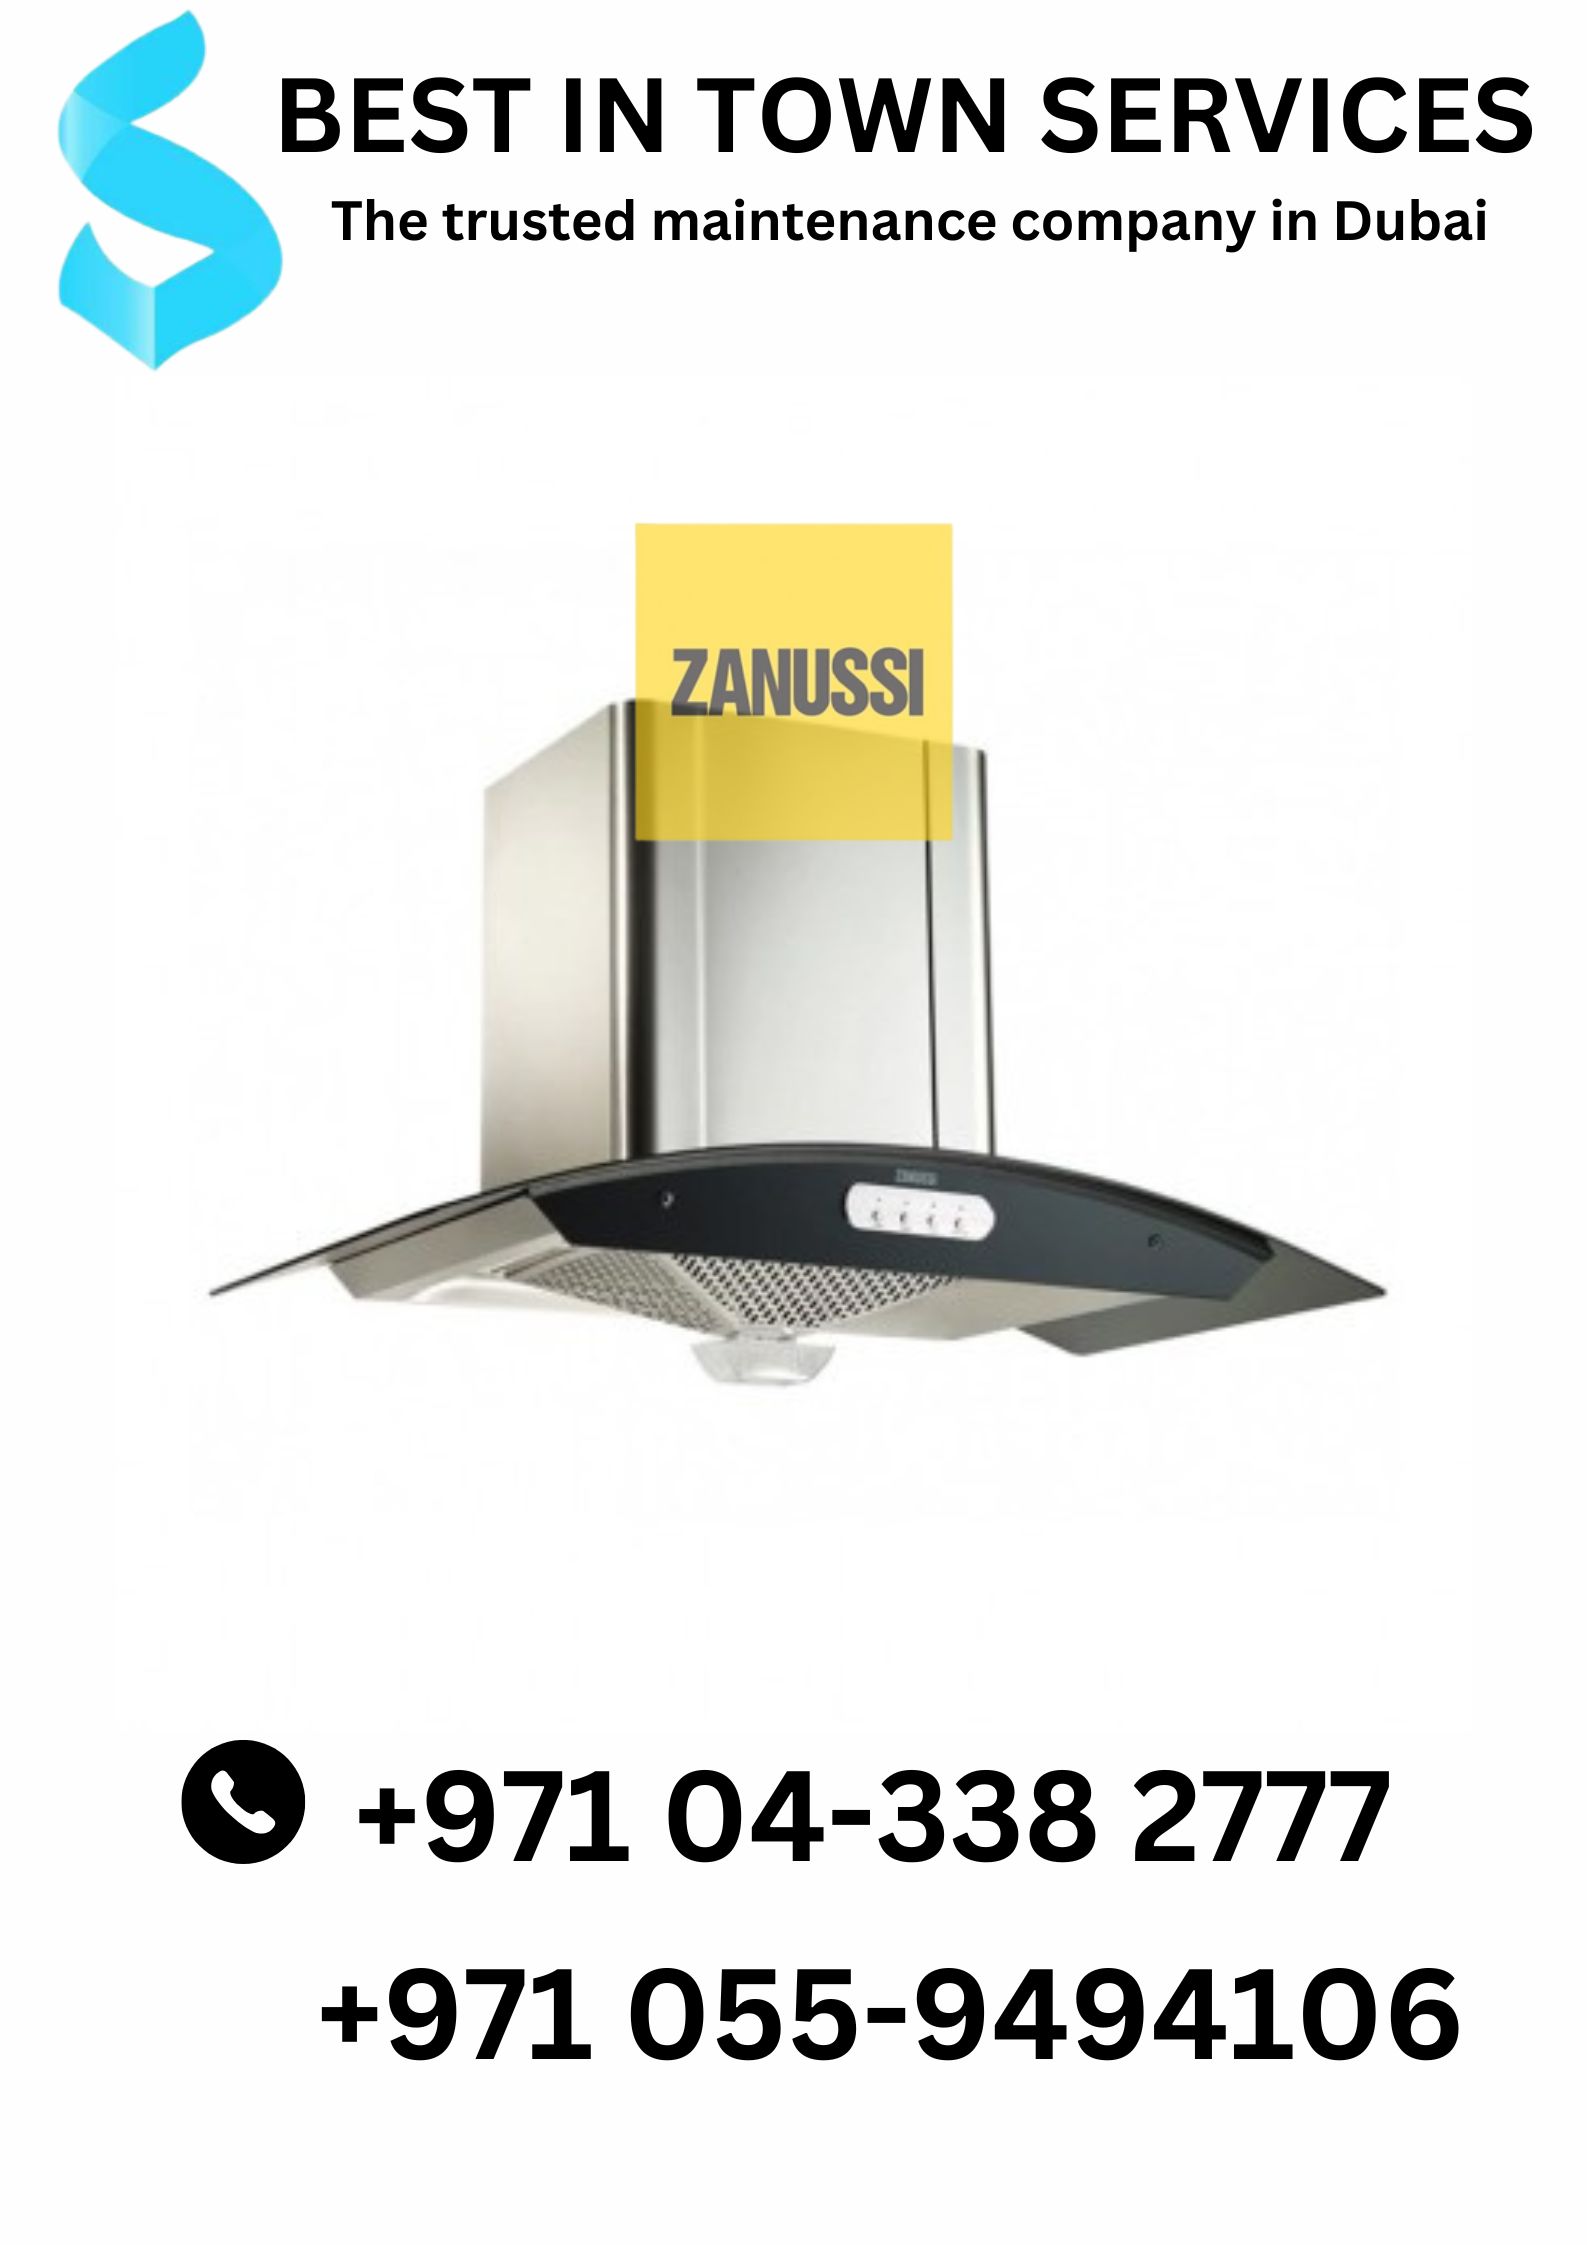 Zanussi Washing machine repair, Zanussi Dishwasher repair Dubai